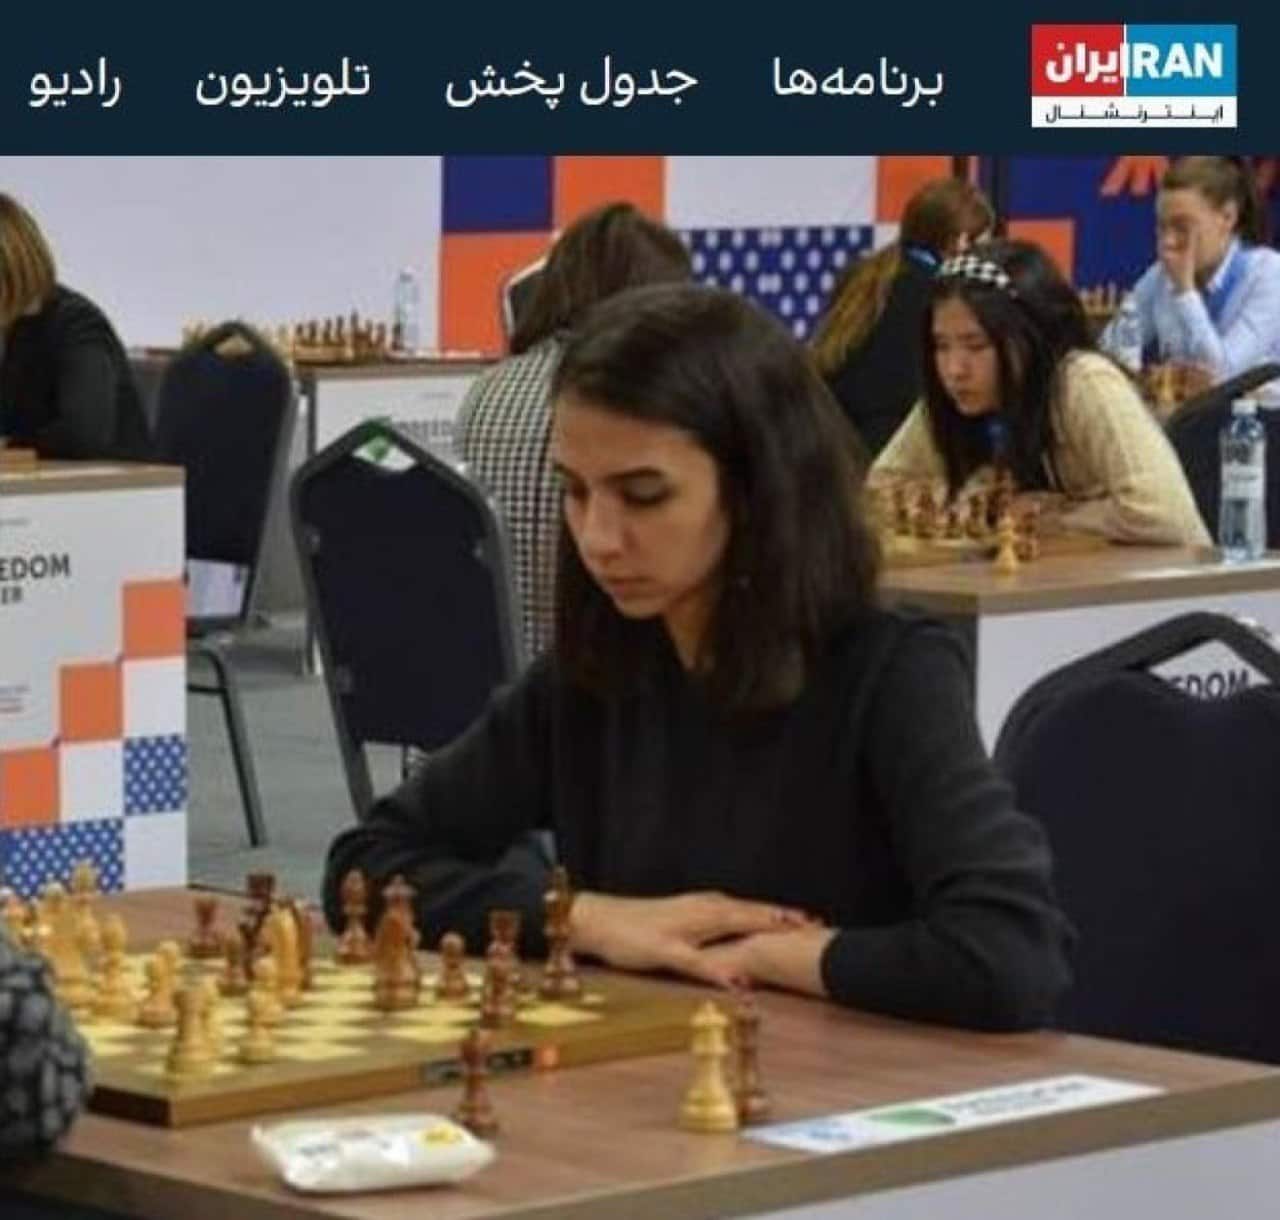 La campionessa di scacchi iraniana Sara Khadim al-Sharia